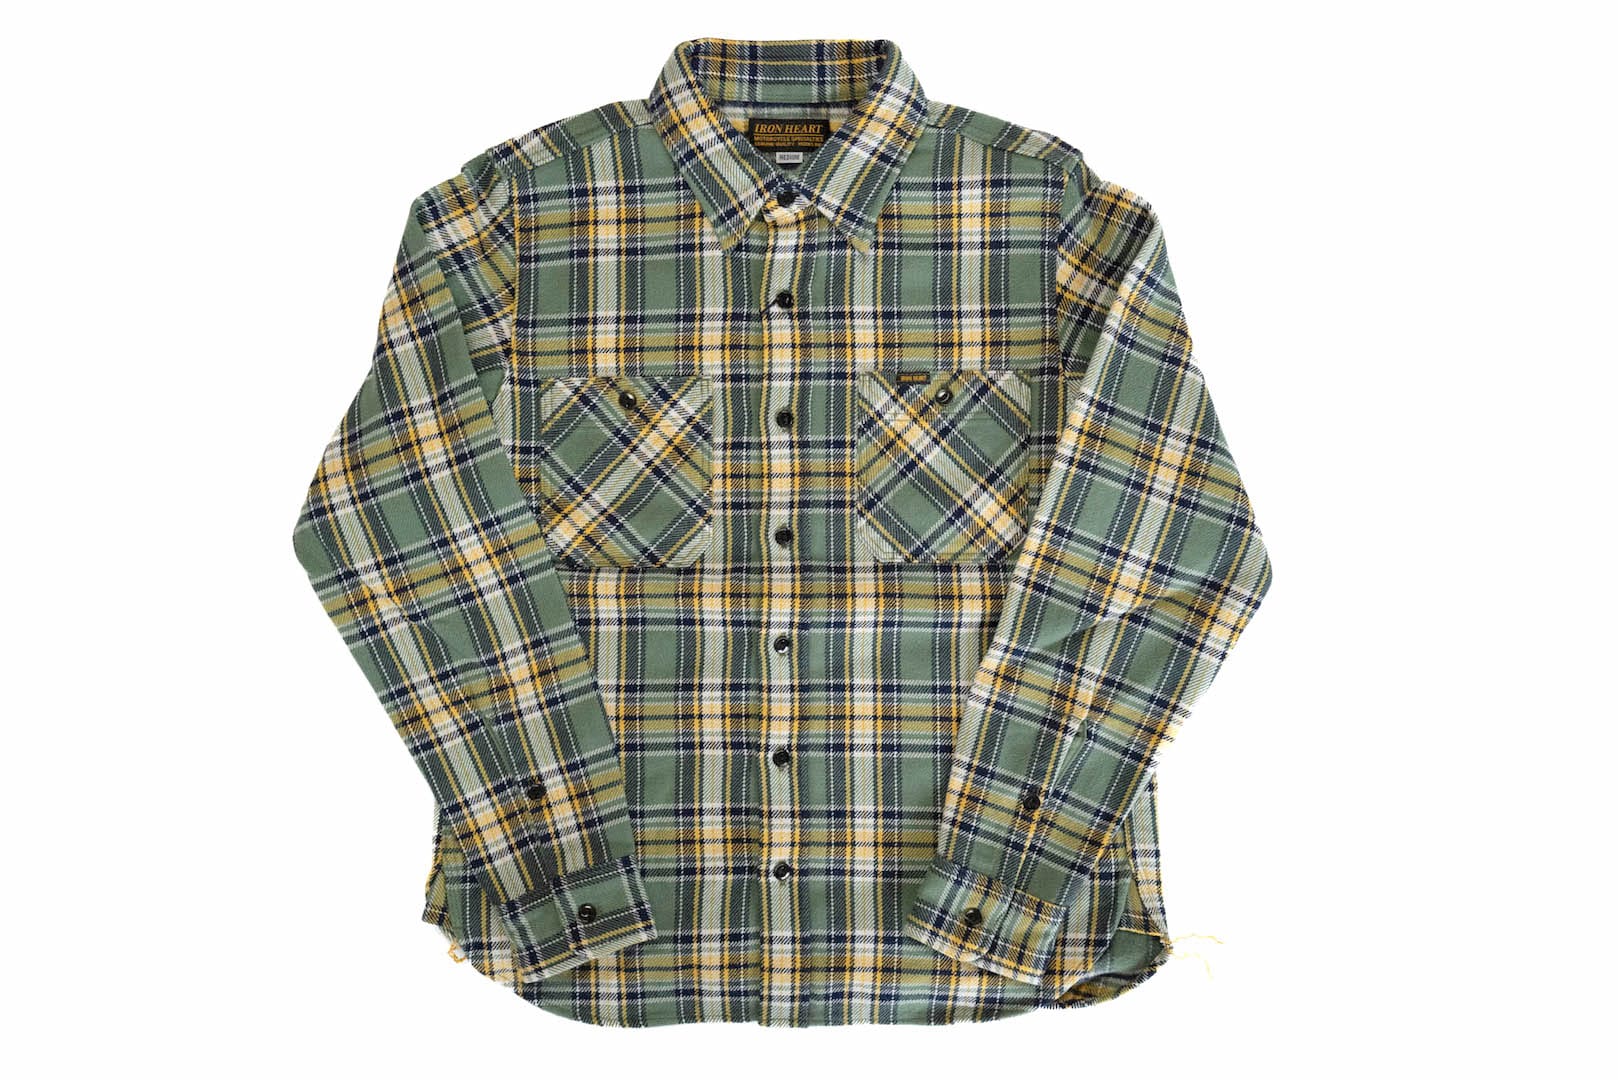 Iron Heart Ultra-Heavy Flannel Tartan Check Work Shirt (Wheat Grass)